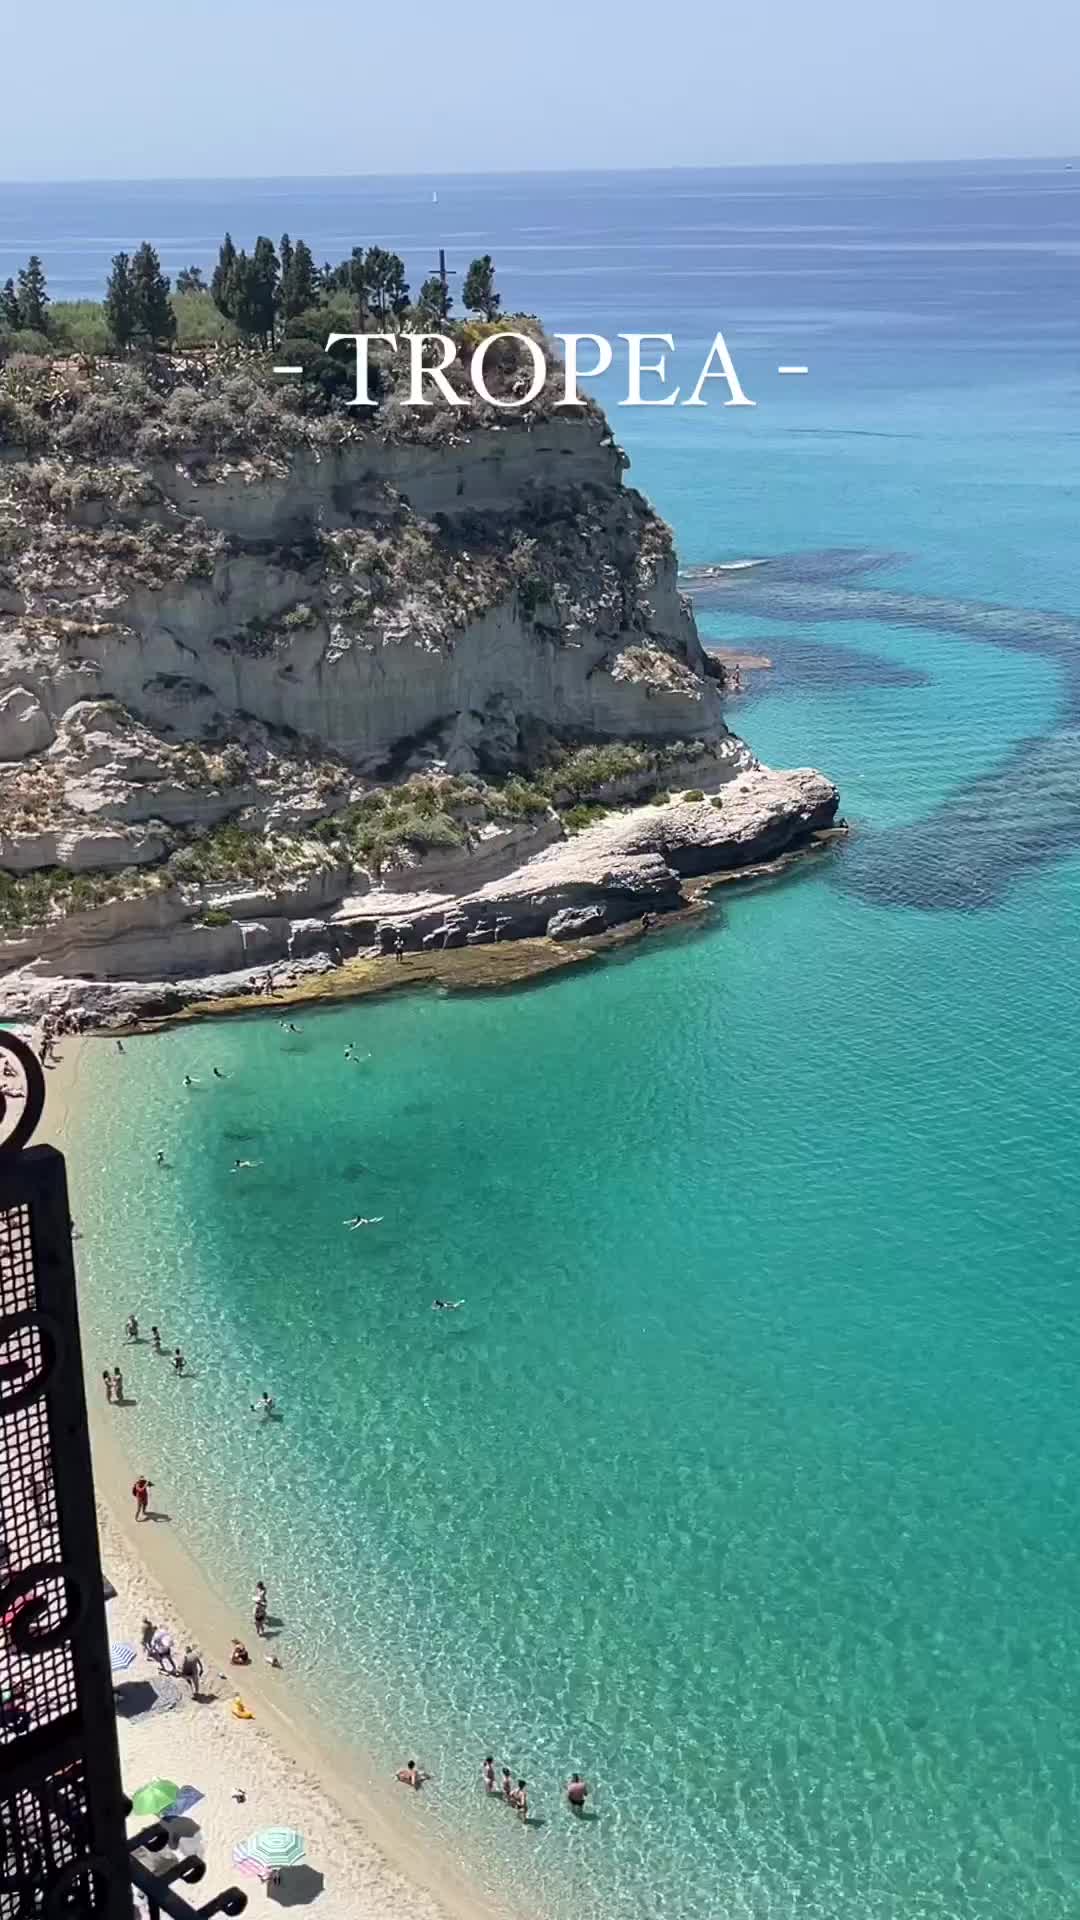 Ferragosto in Tropea: Sun, Sea & Relaxation